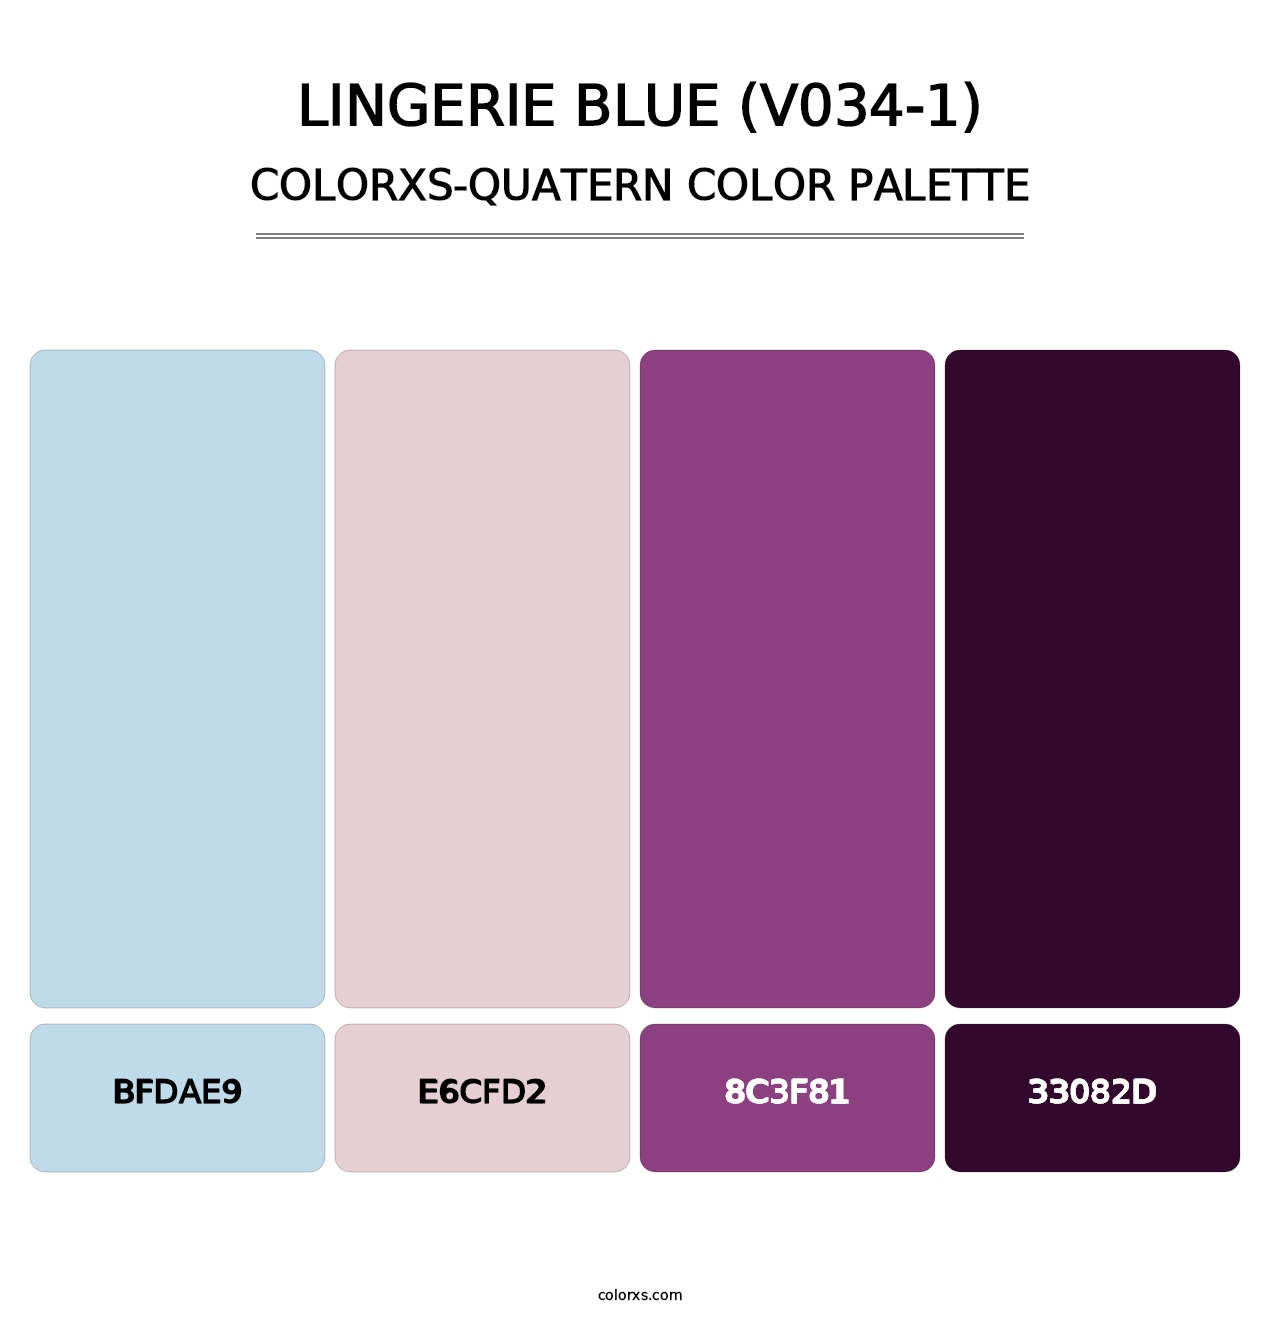 Lingerie Blue (V034-1) - Colorxs Quatern Palette